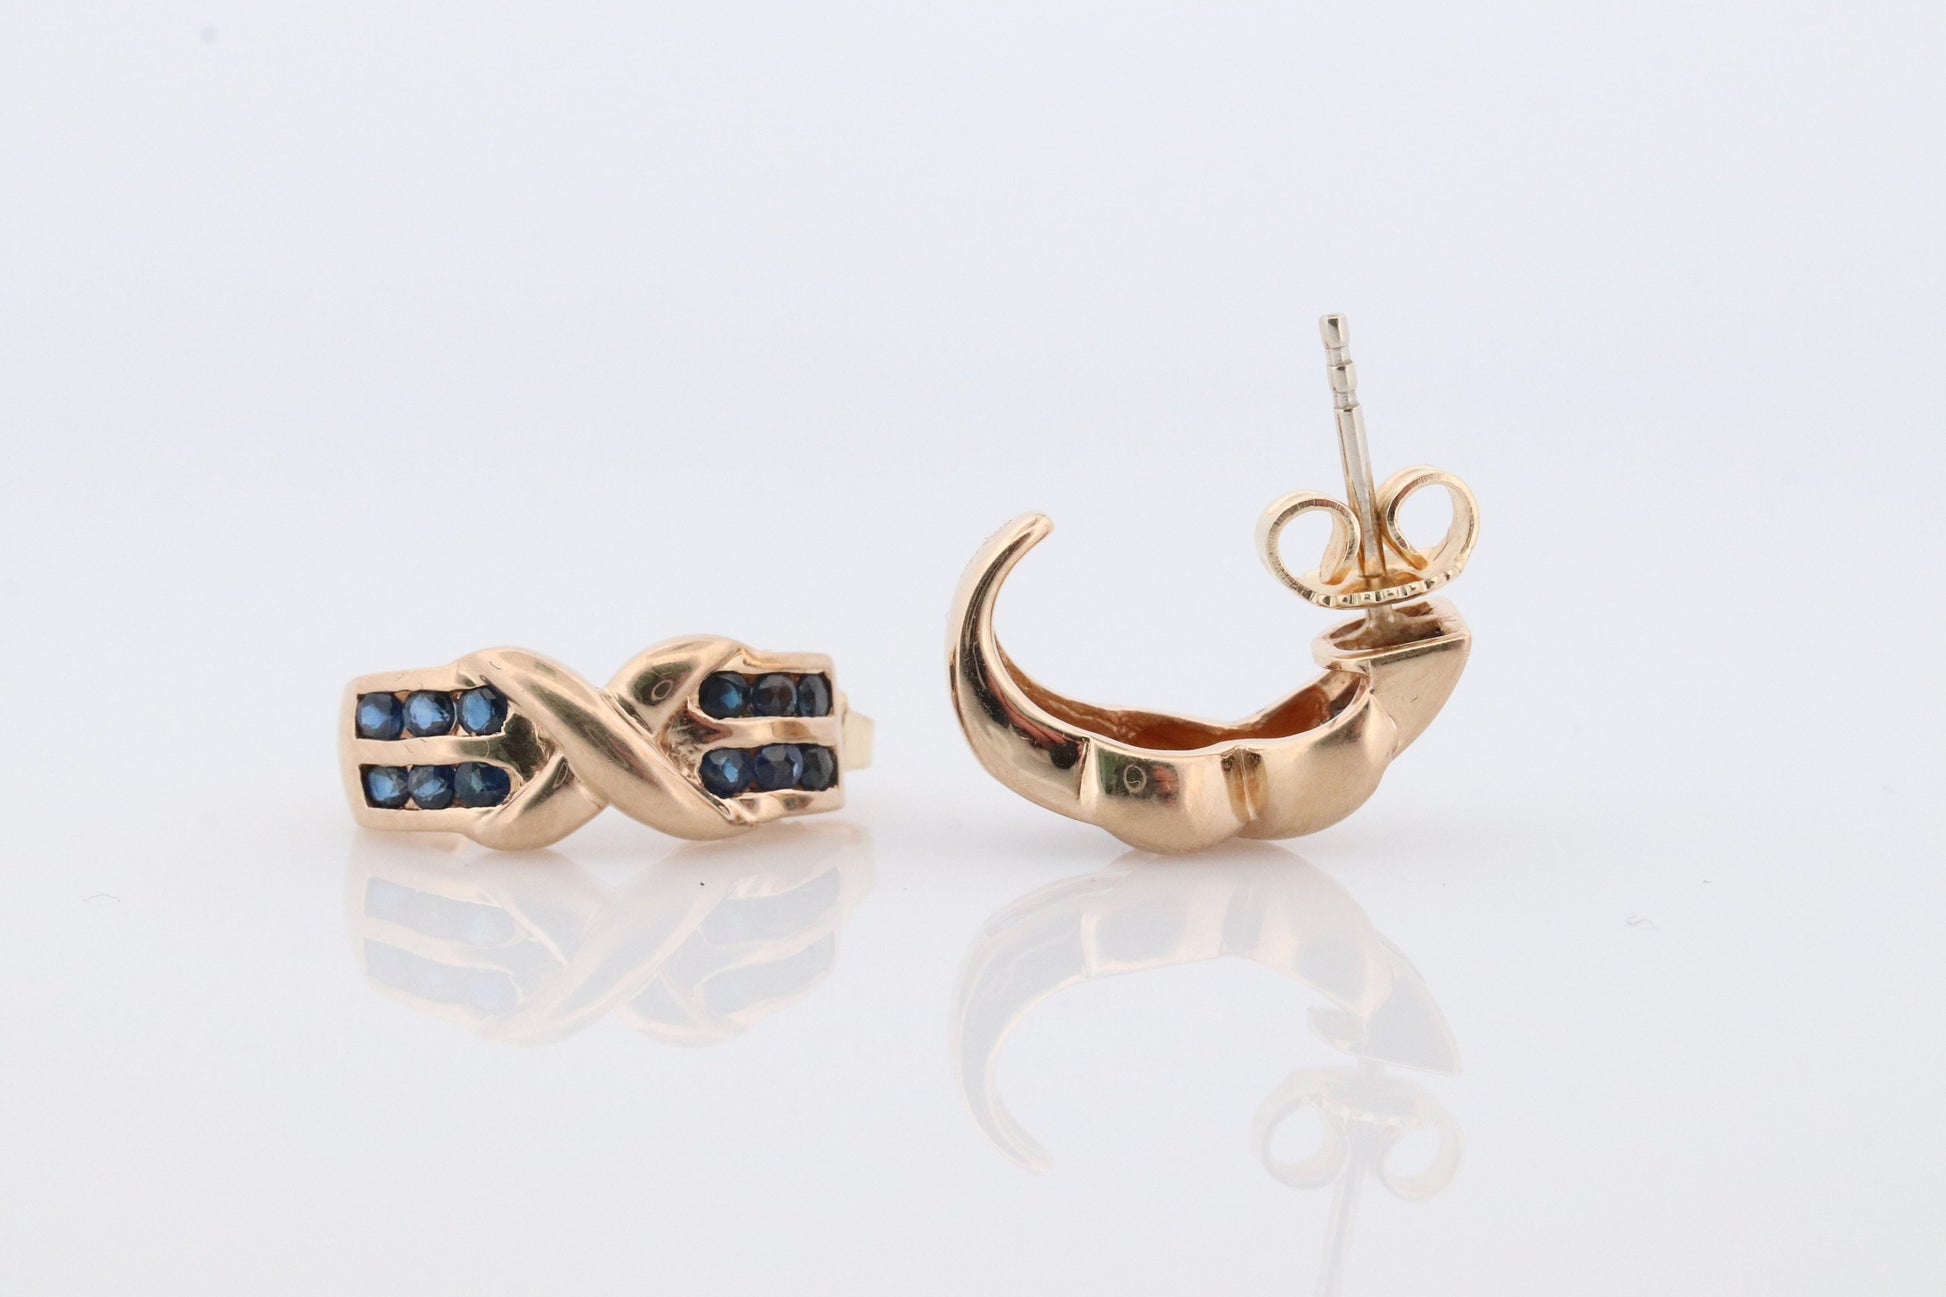 14k Sapphire cross X Dangle earrings. Criss X Channel set Sapphire hoop earrings. XOXO Love Kiss Hug Blue Sapphire Earrings.